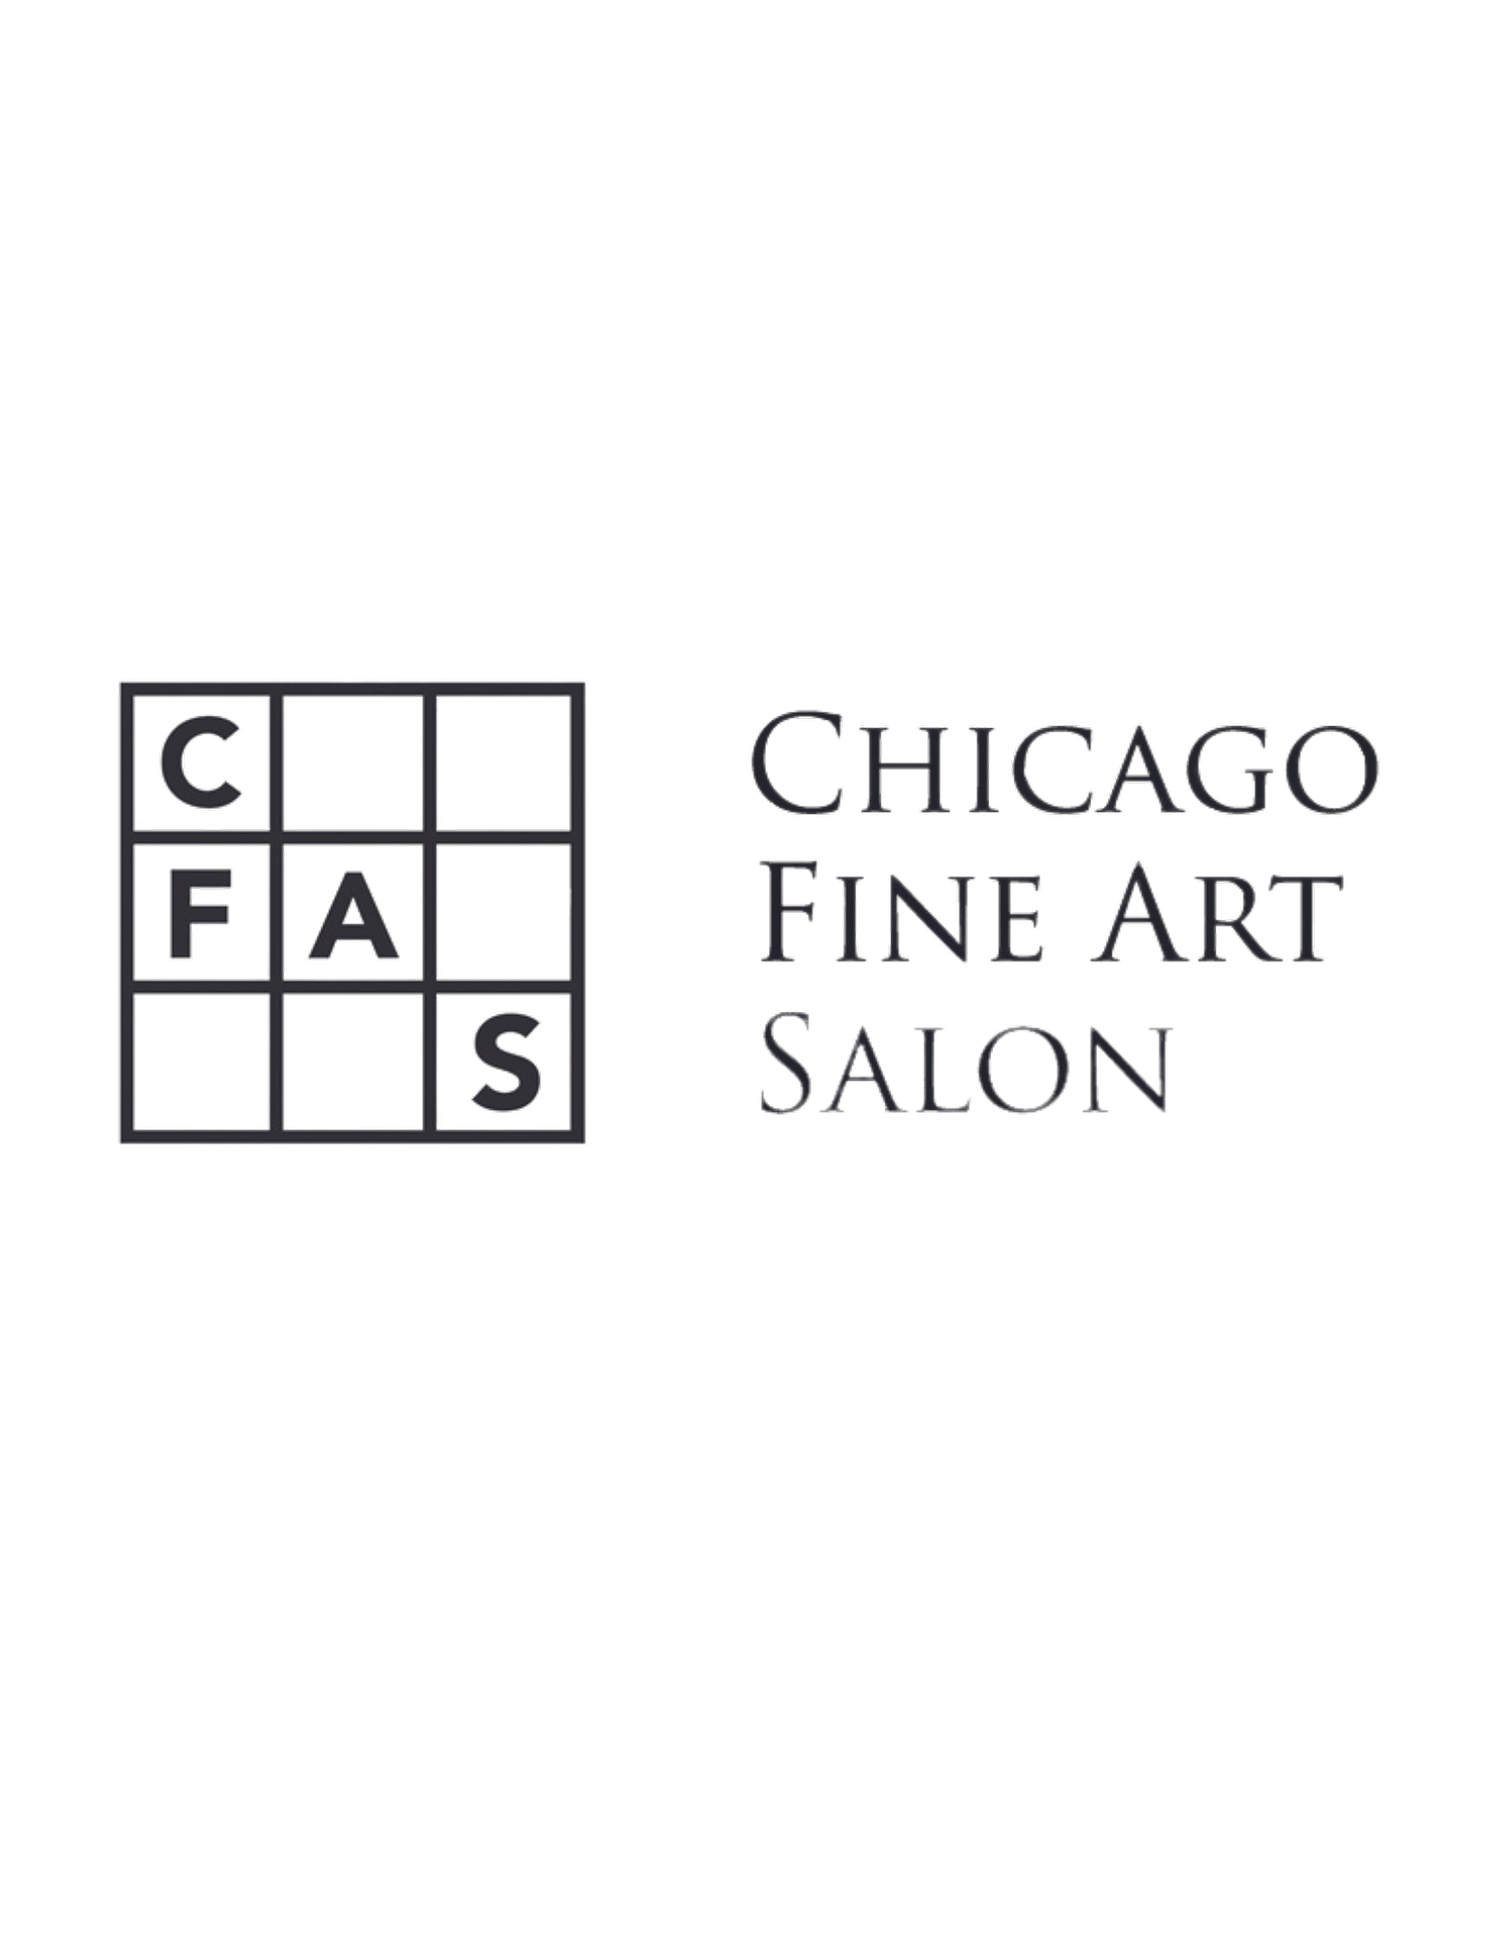 The Chicago Fine Art Salon